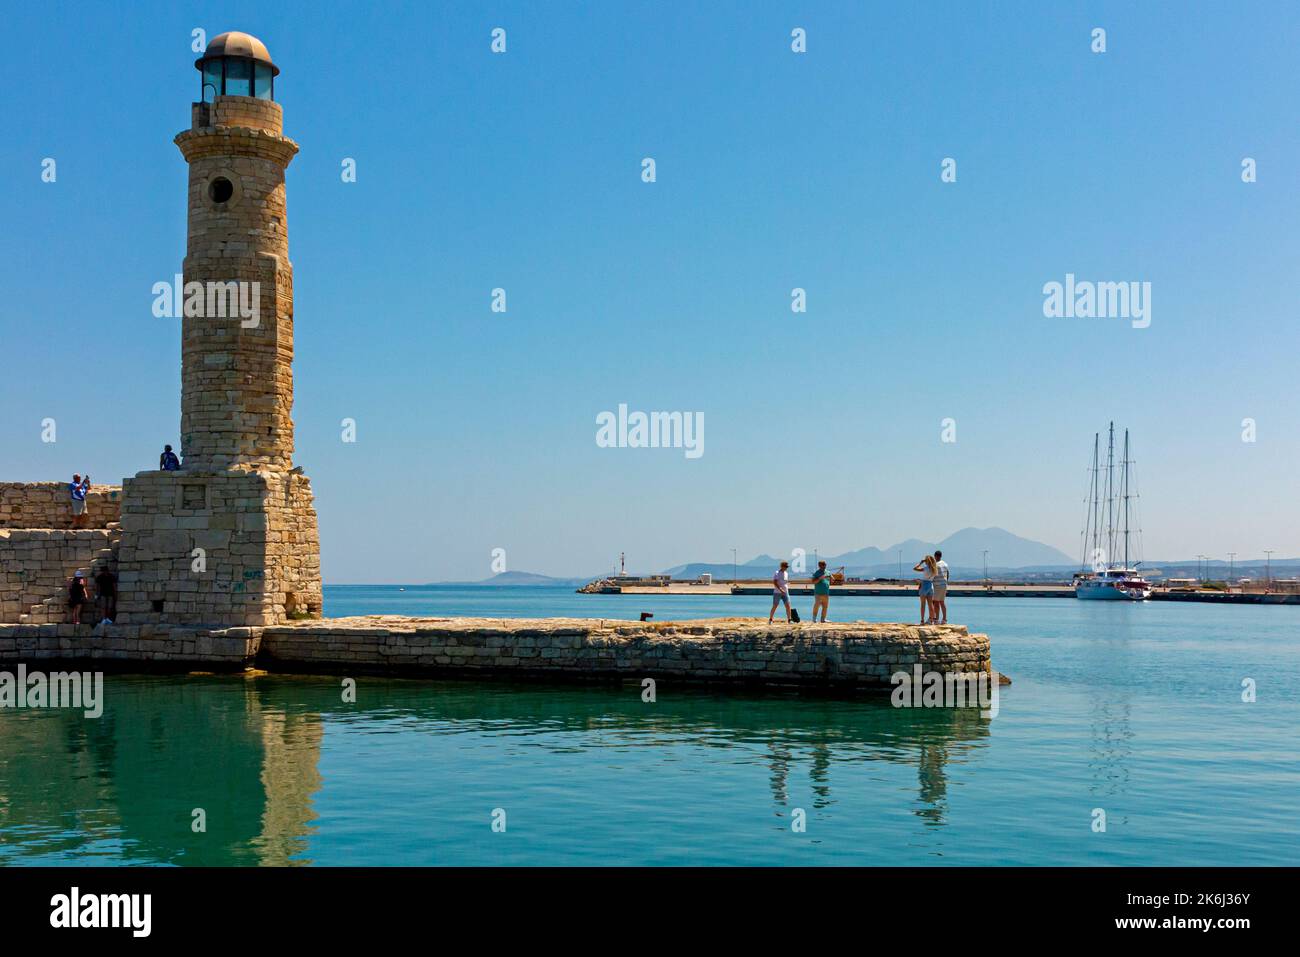 Le phare dans le vieux port à Rethymno ou Rethymnon une station balnéaire sur la côte nord de la Crète en Grèce. Banque D'Images